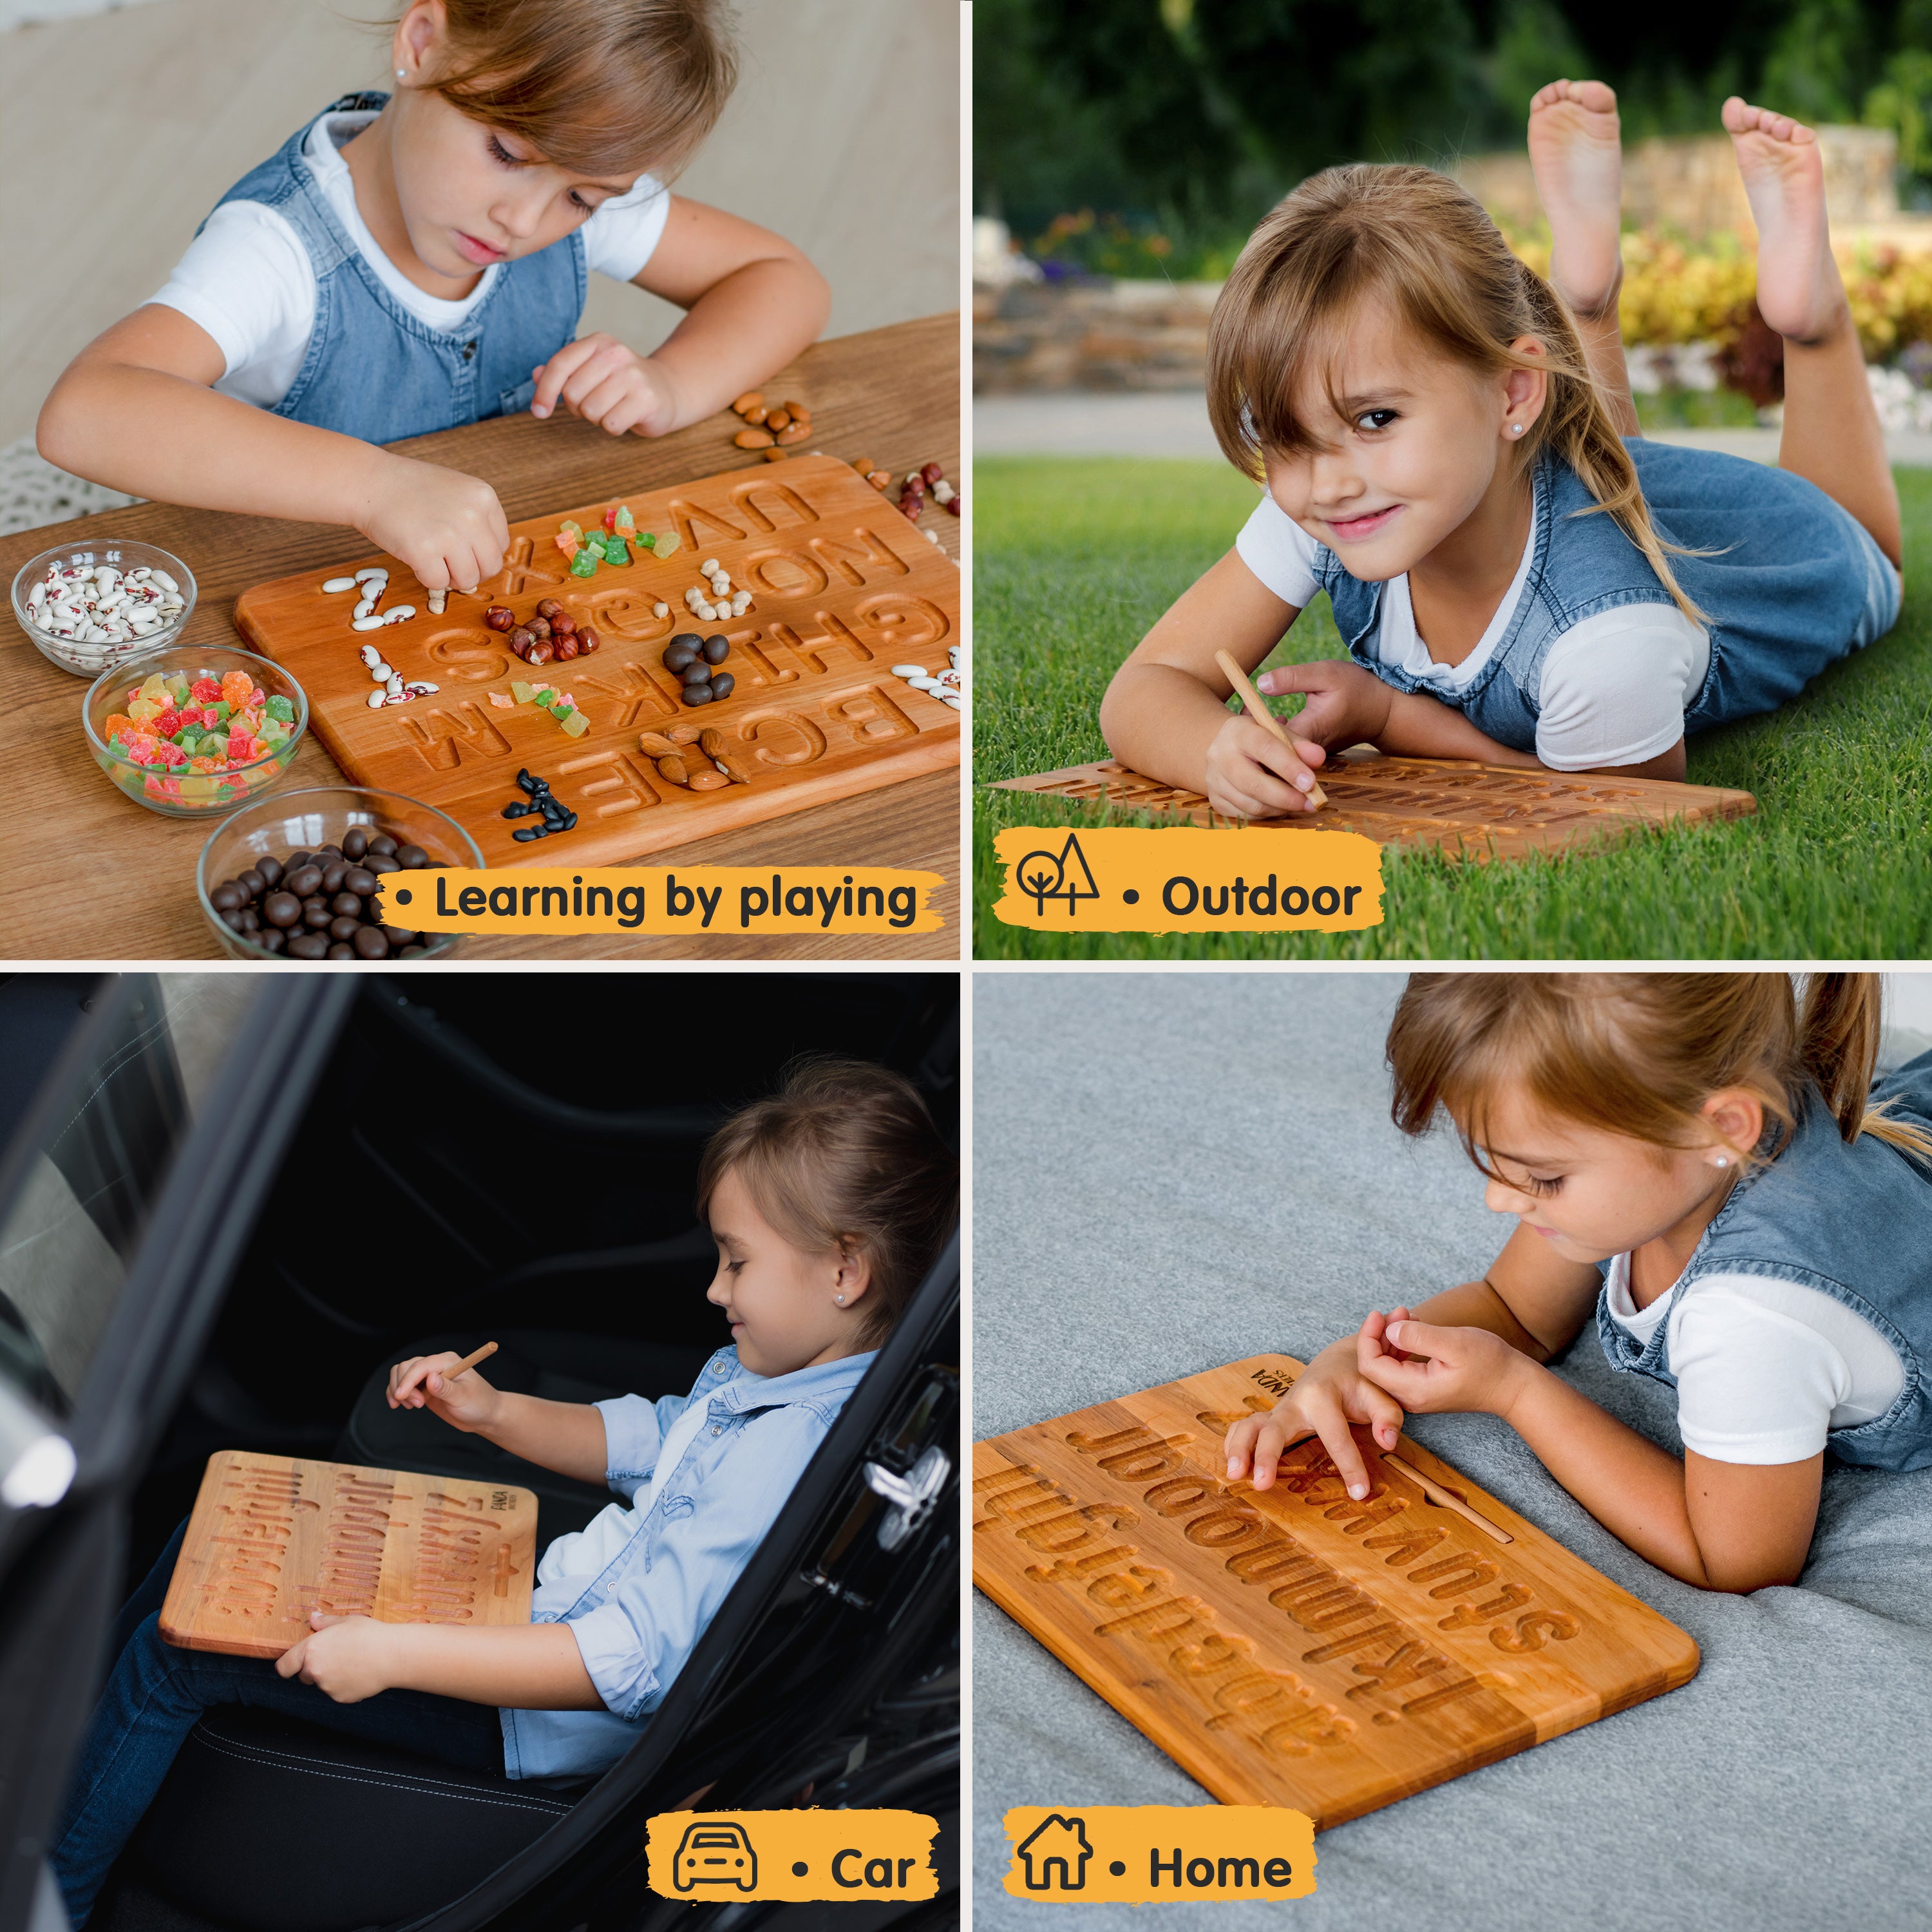 Montessori Wooden Tracing Board